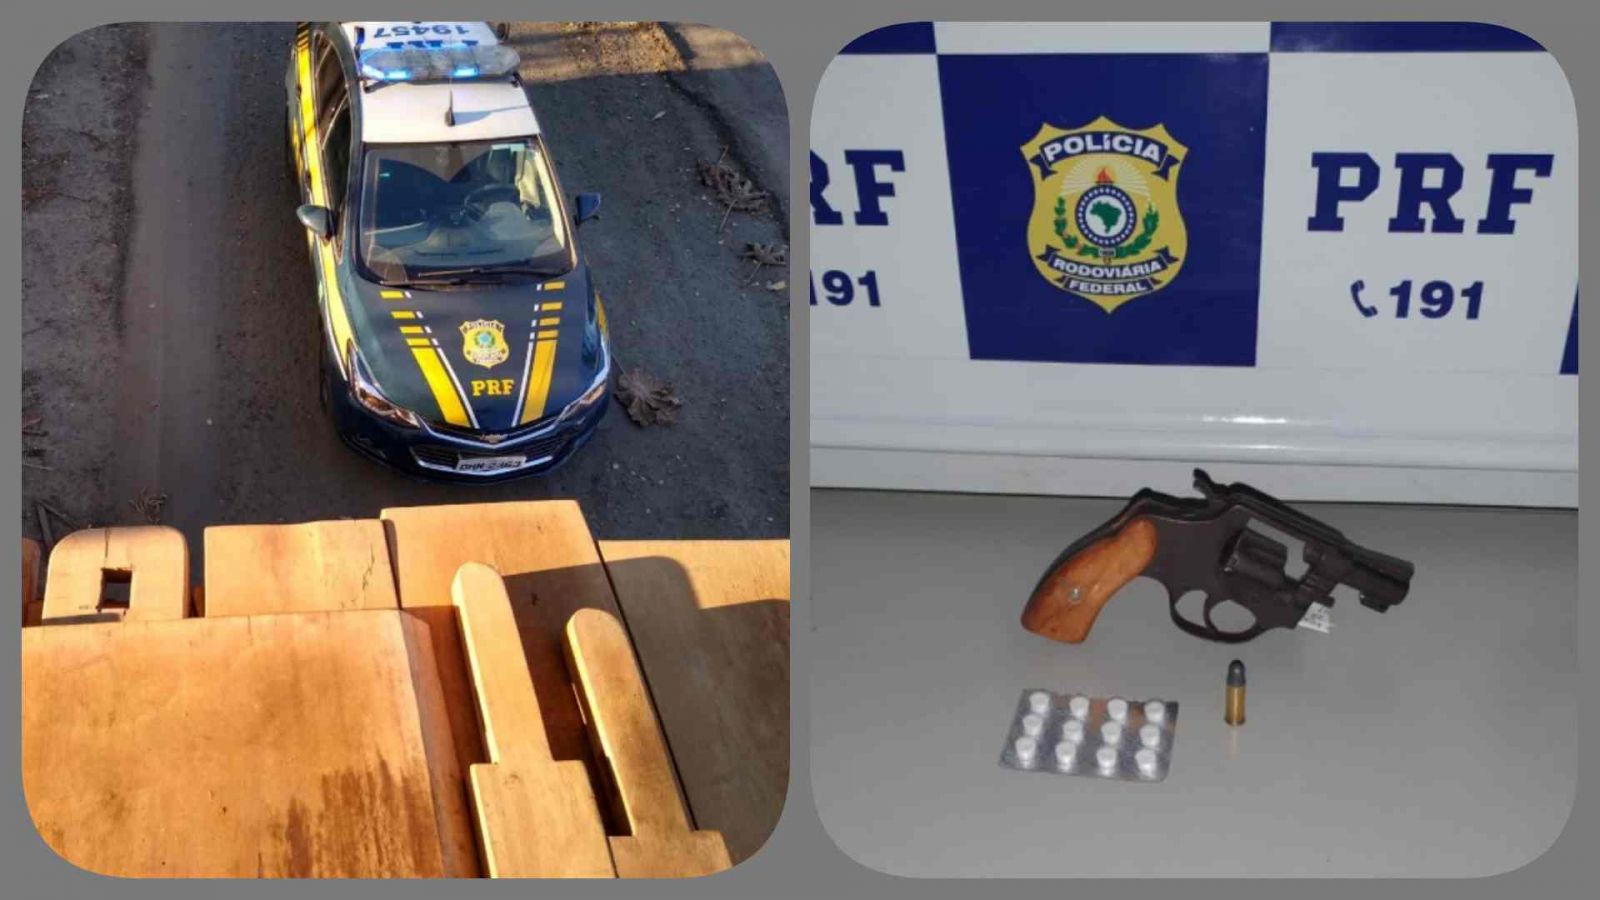 Porte de arma de fogo, porte de drogas e transporte ilegal de madeira são flagrados pela PRF em Ji-Paraná - News Rondônia